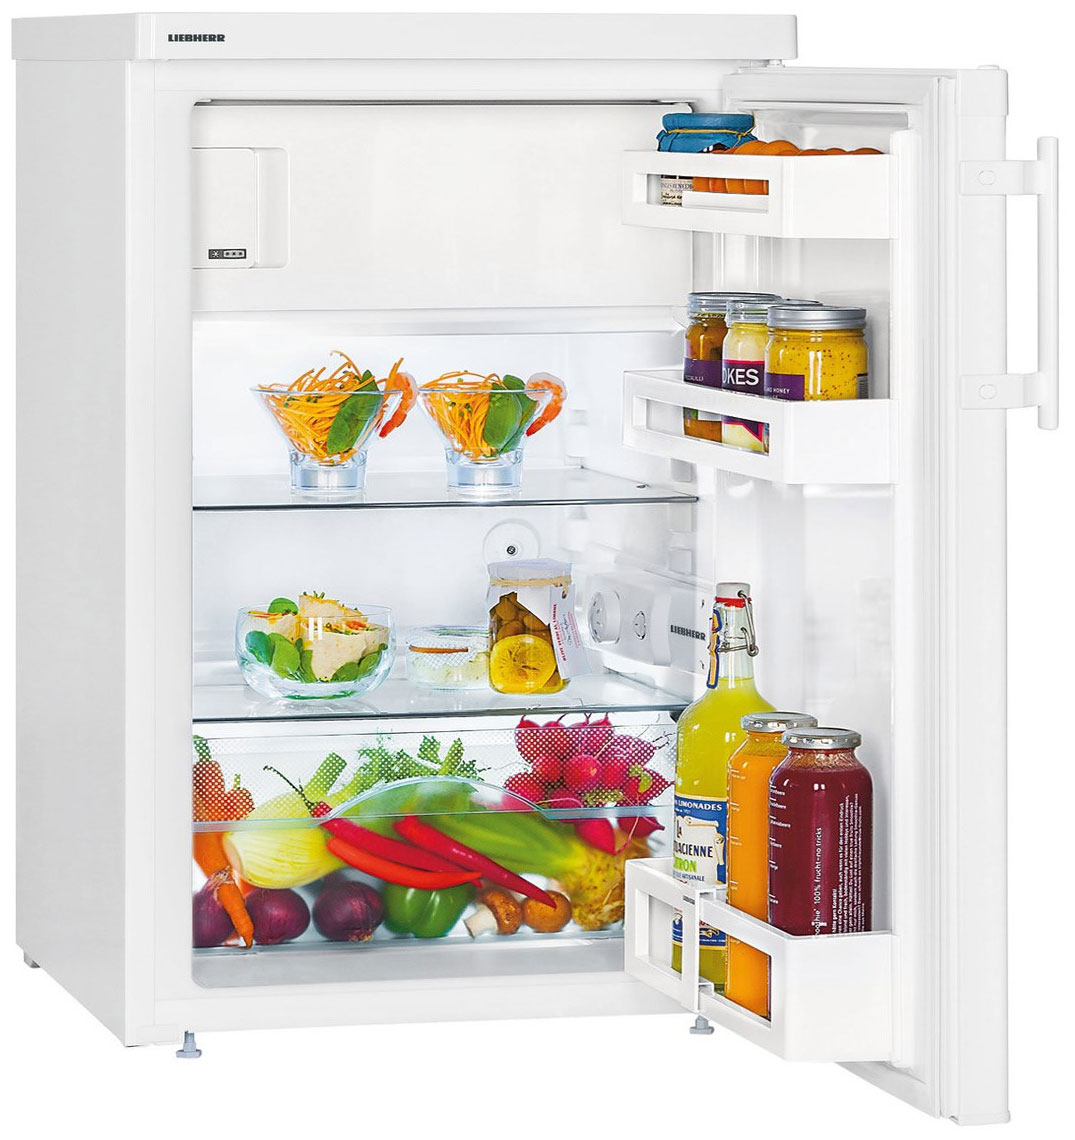 Однокамерный холодильник Liebherr T 1414-22 однокамерный холодильник liebherr t 1714 22